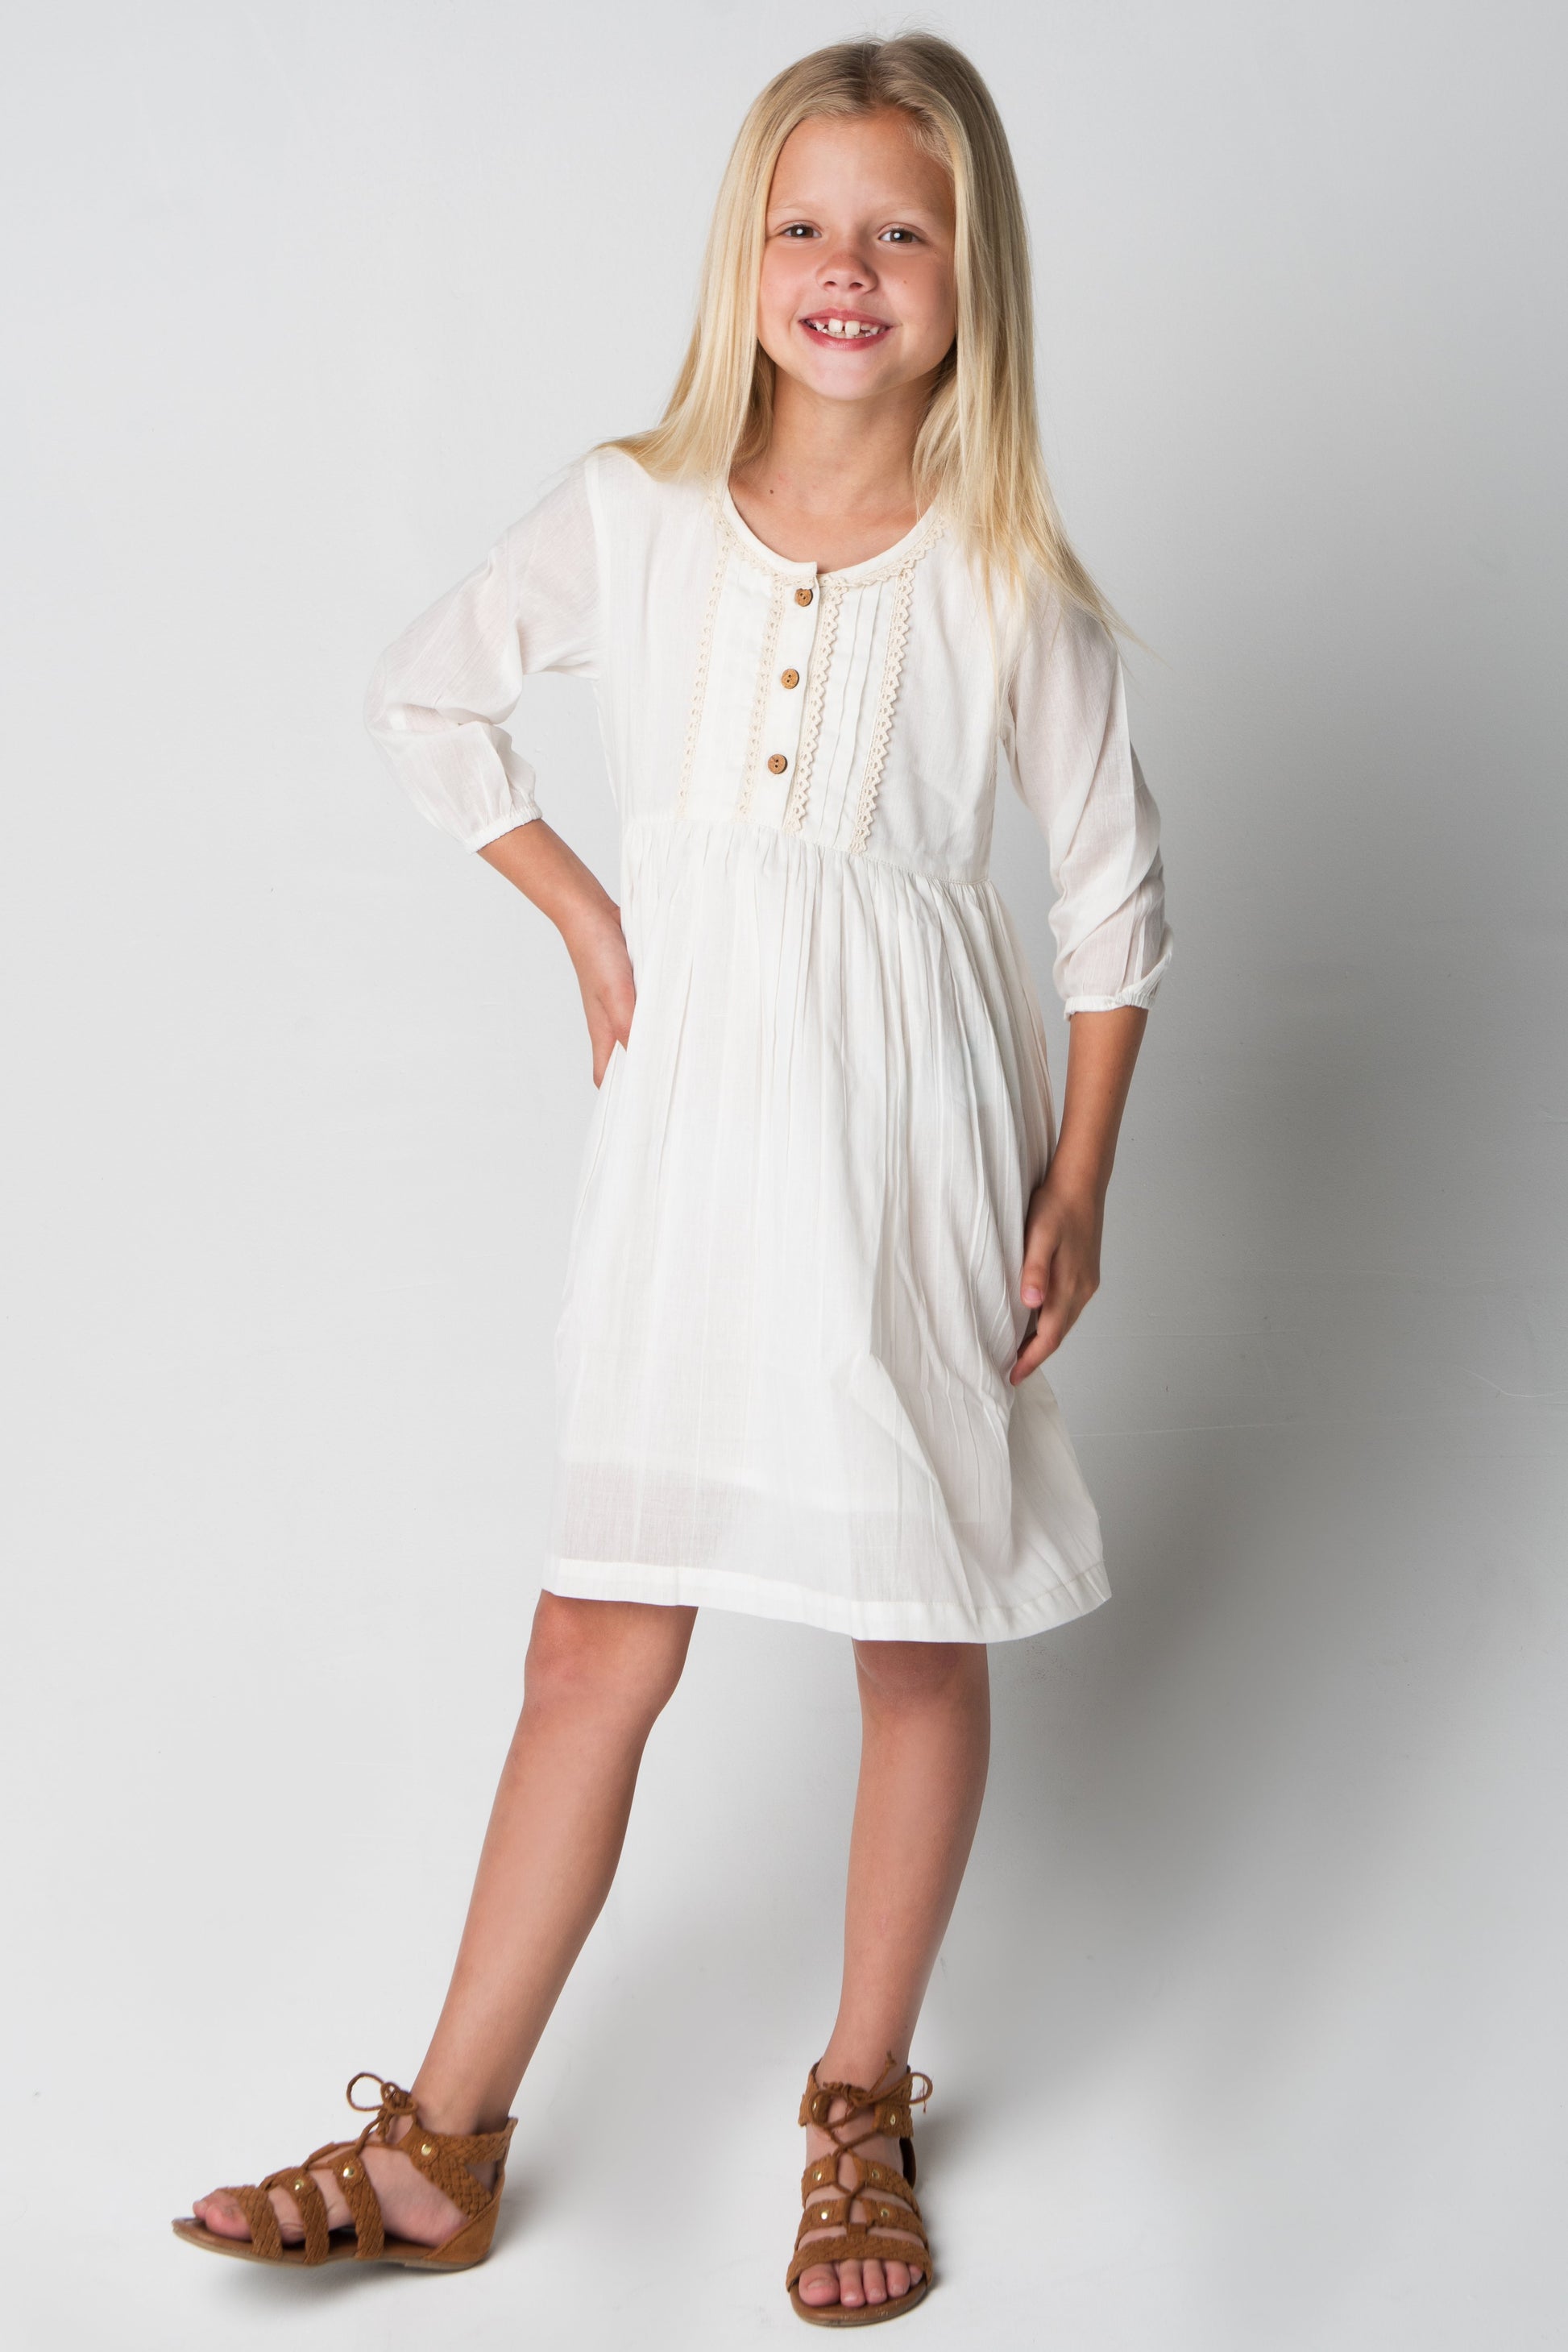 White Lace Detail Dress